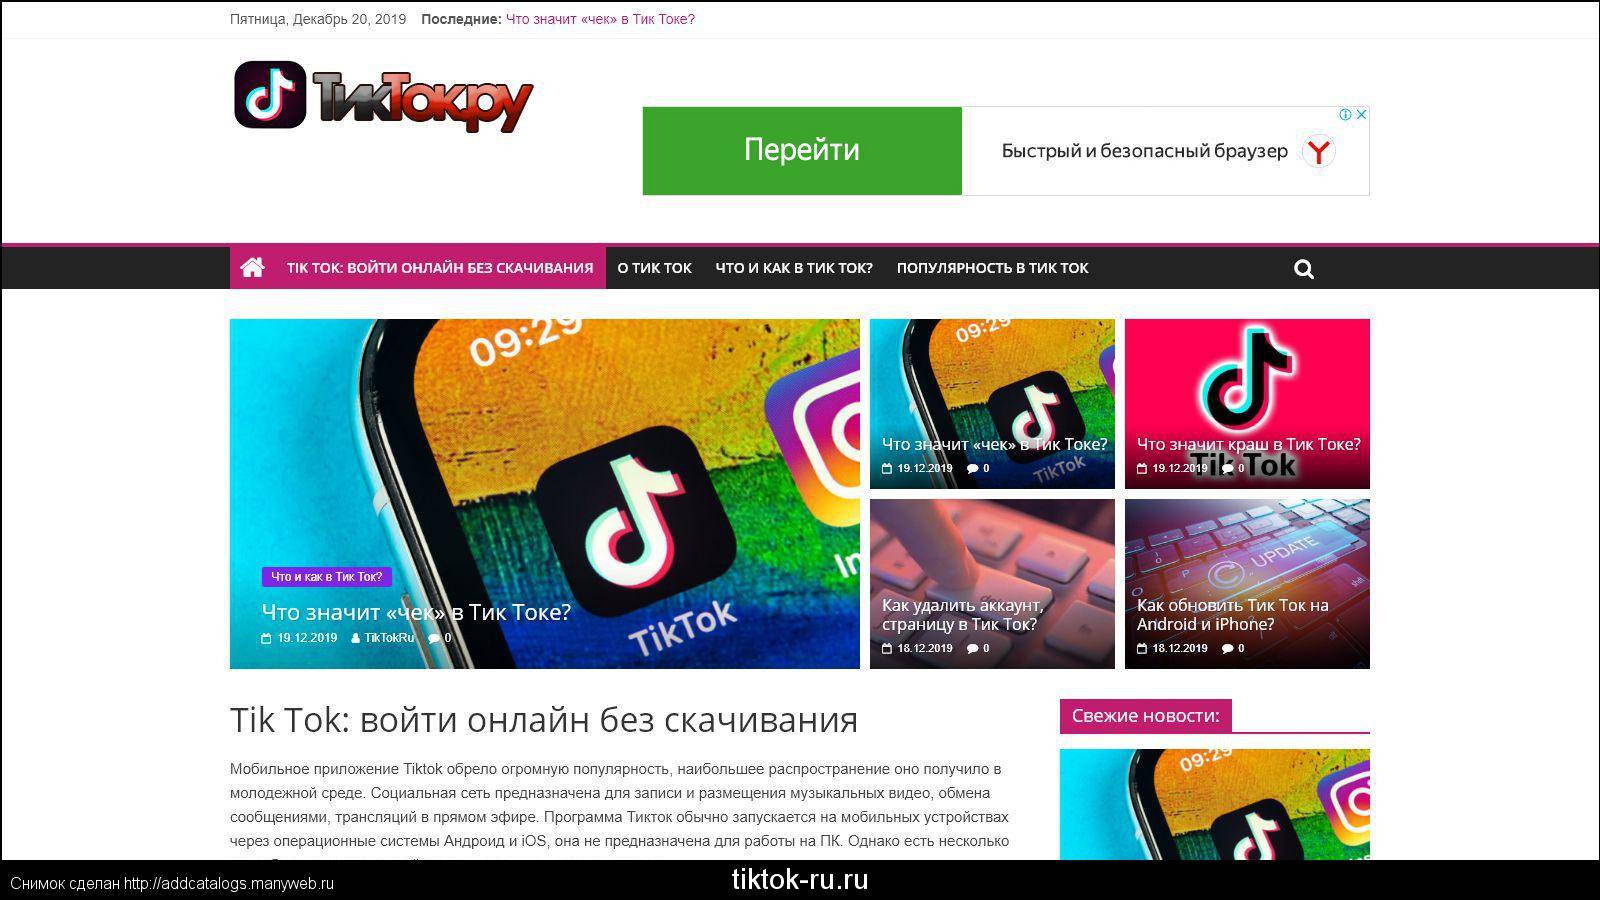 Скачать новый тик ток на андроид бесплатно через телеграмм последнюю версию русском языке фото 30